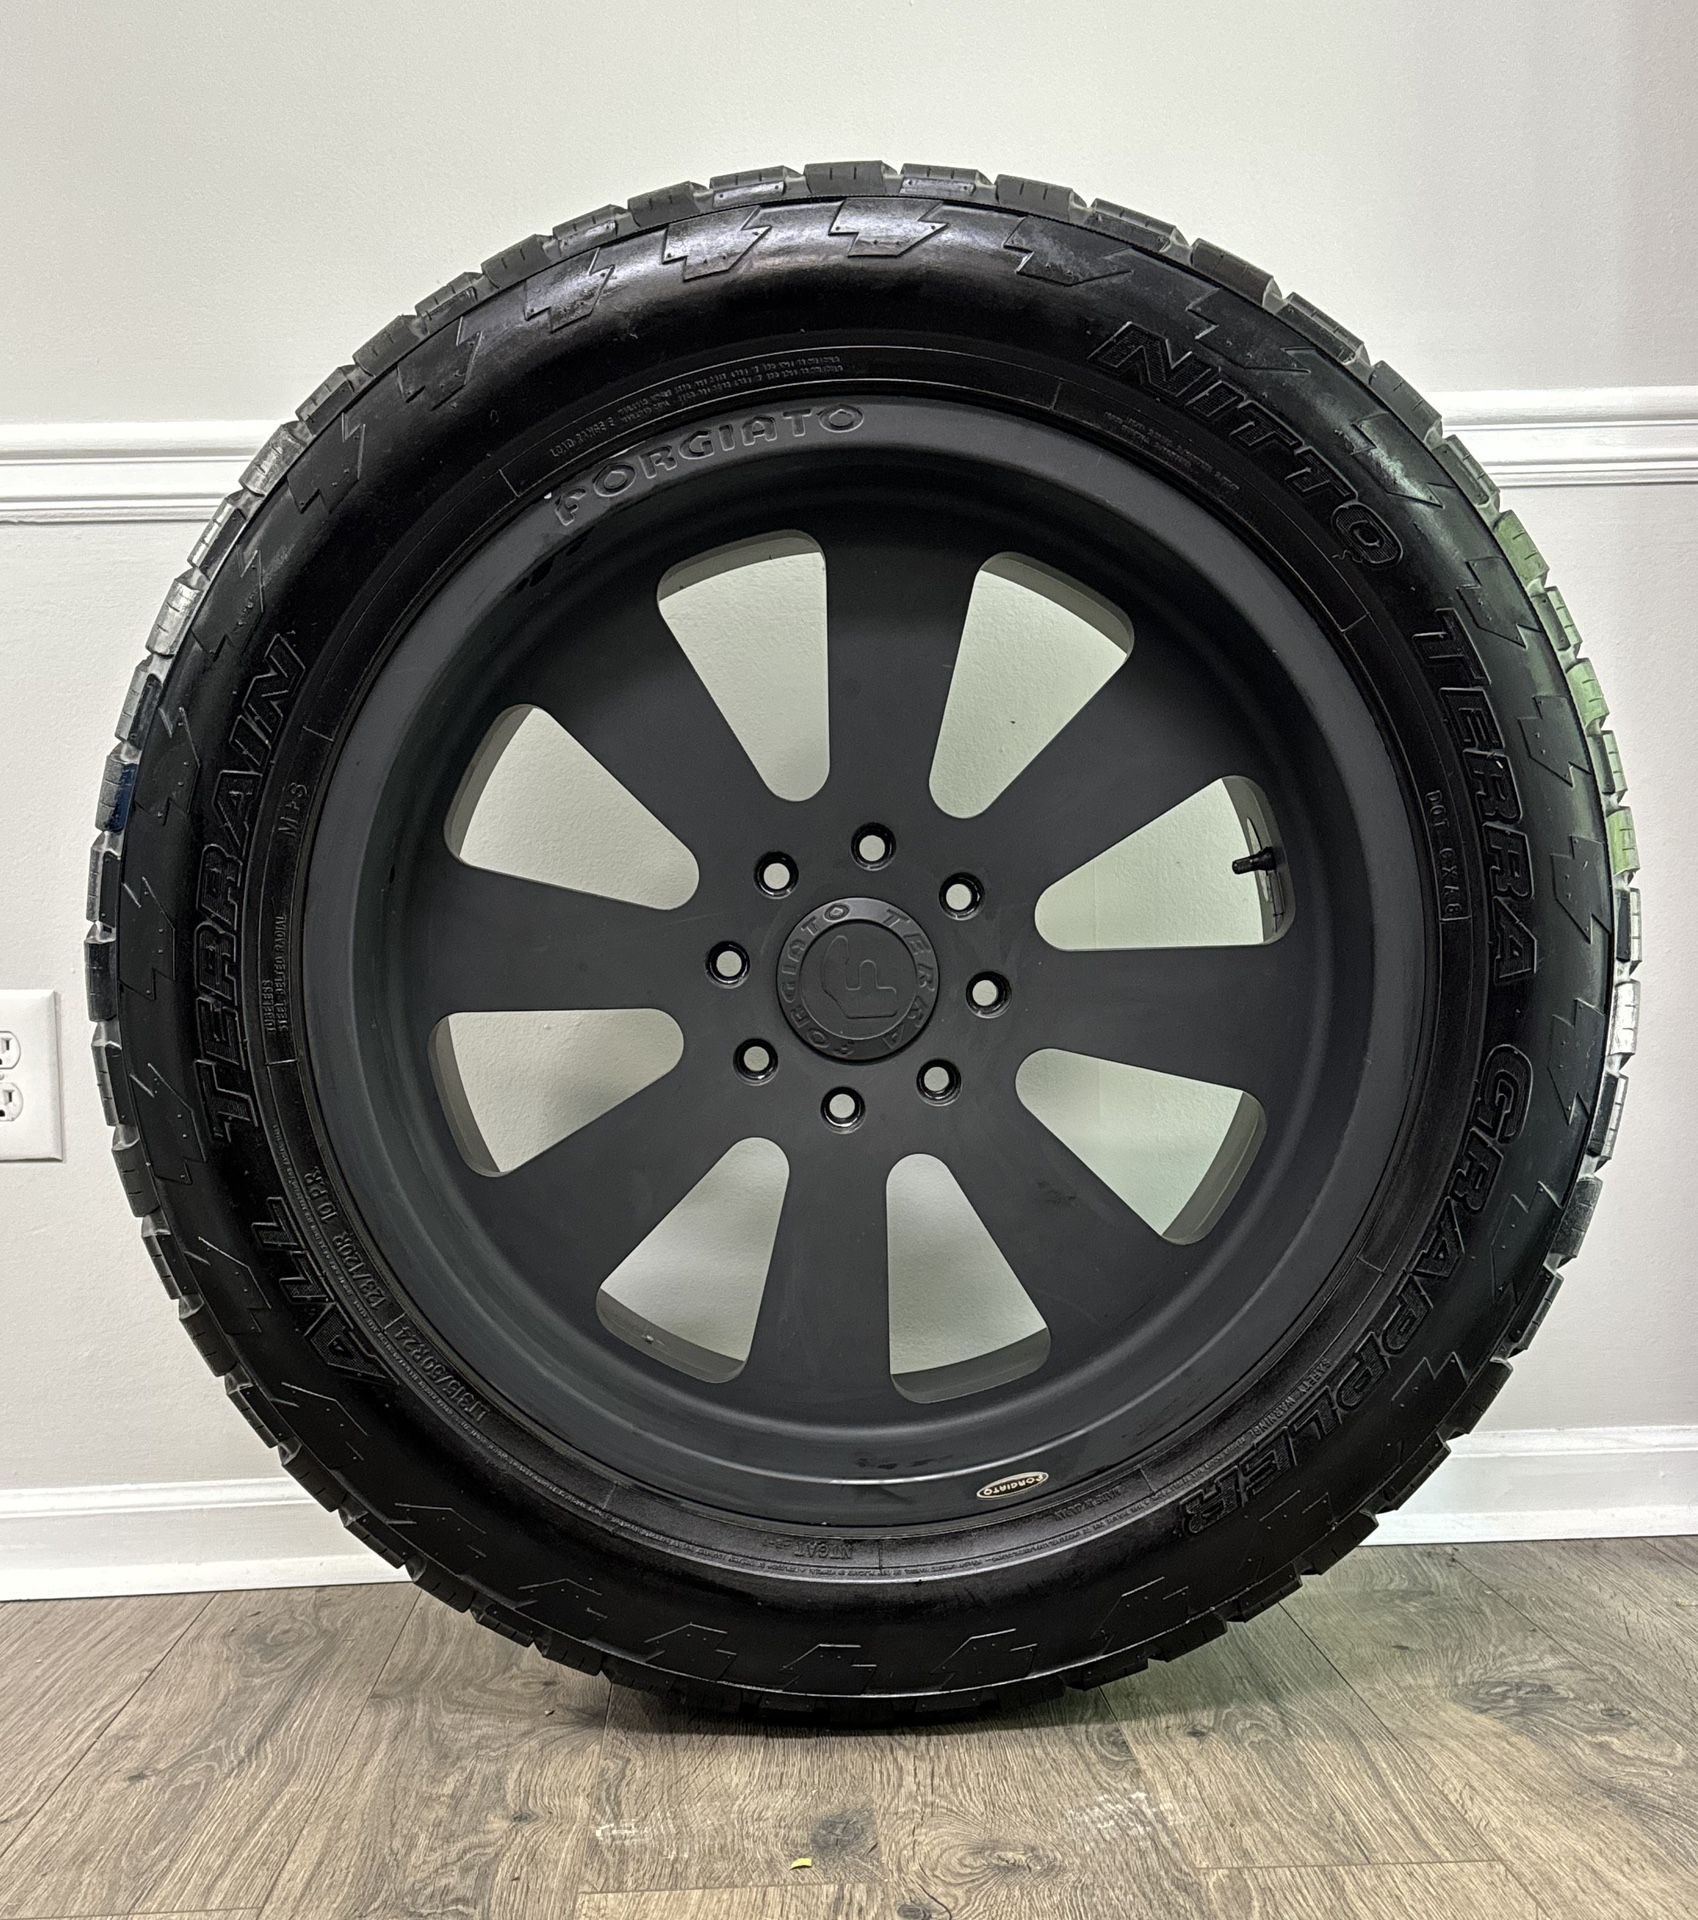 Custom -24” FORGIATO Terra Wheels & Tires - Set Retail $14k+